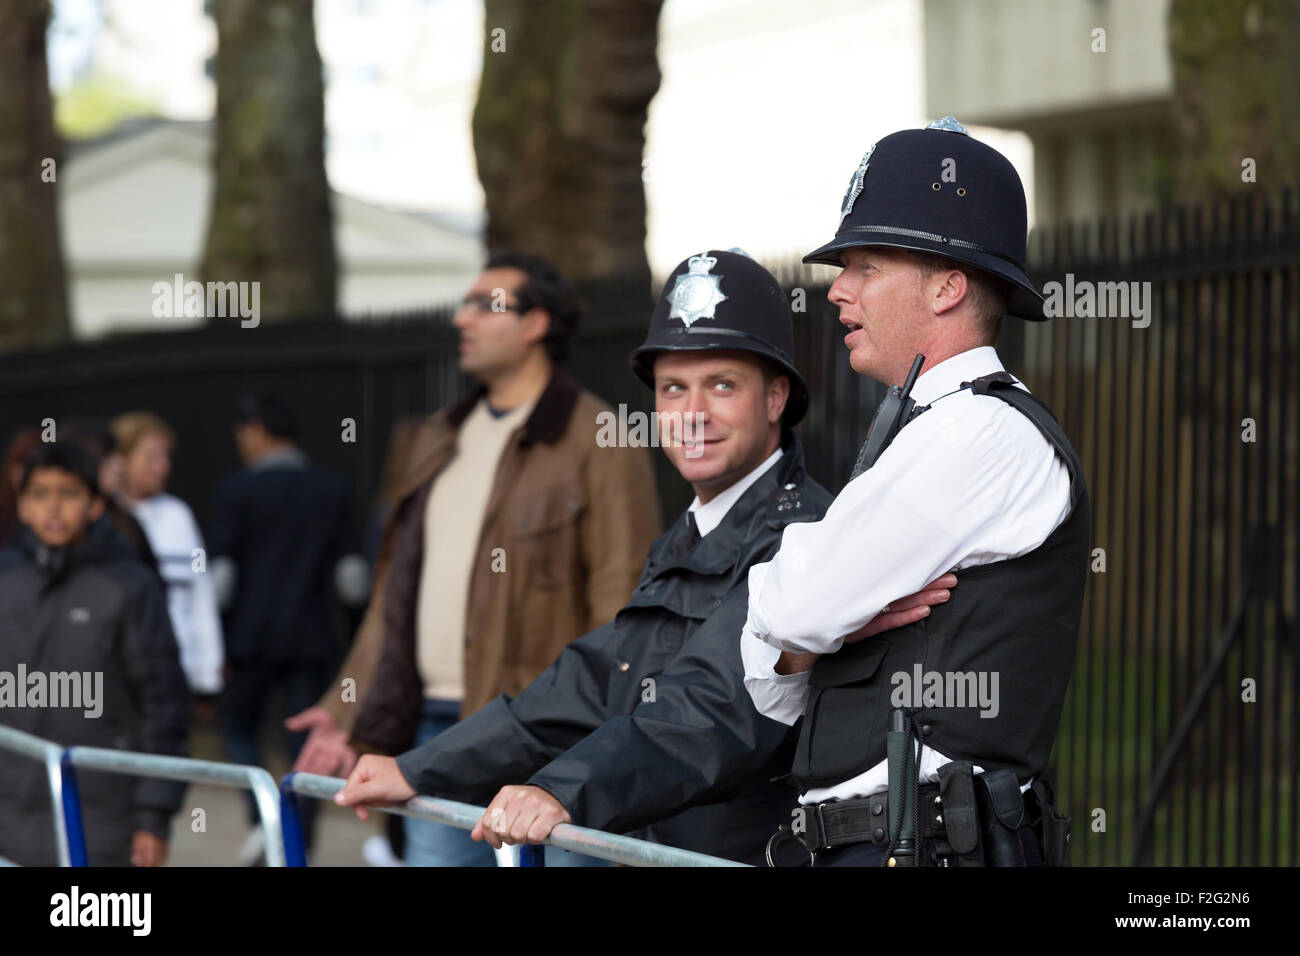 04.06.2012, London, Greater London, Royaume-Uni - policiers de la Metropolitan Police Service sur le bord d'un événement. Banque D'Images